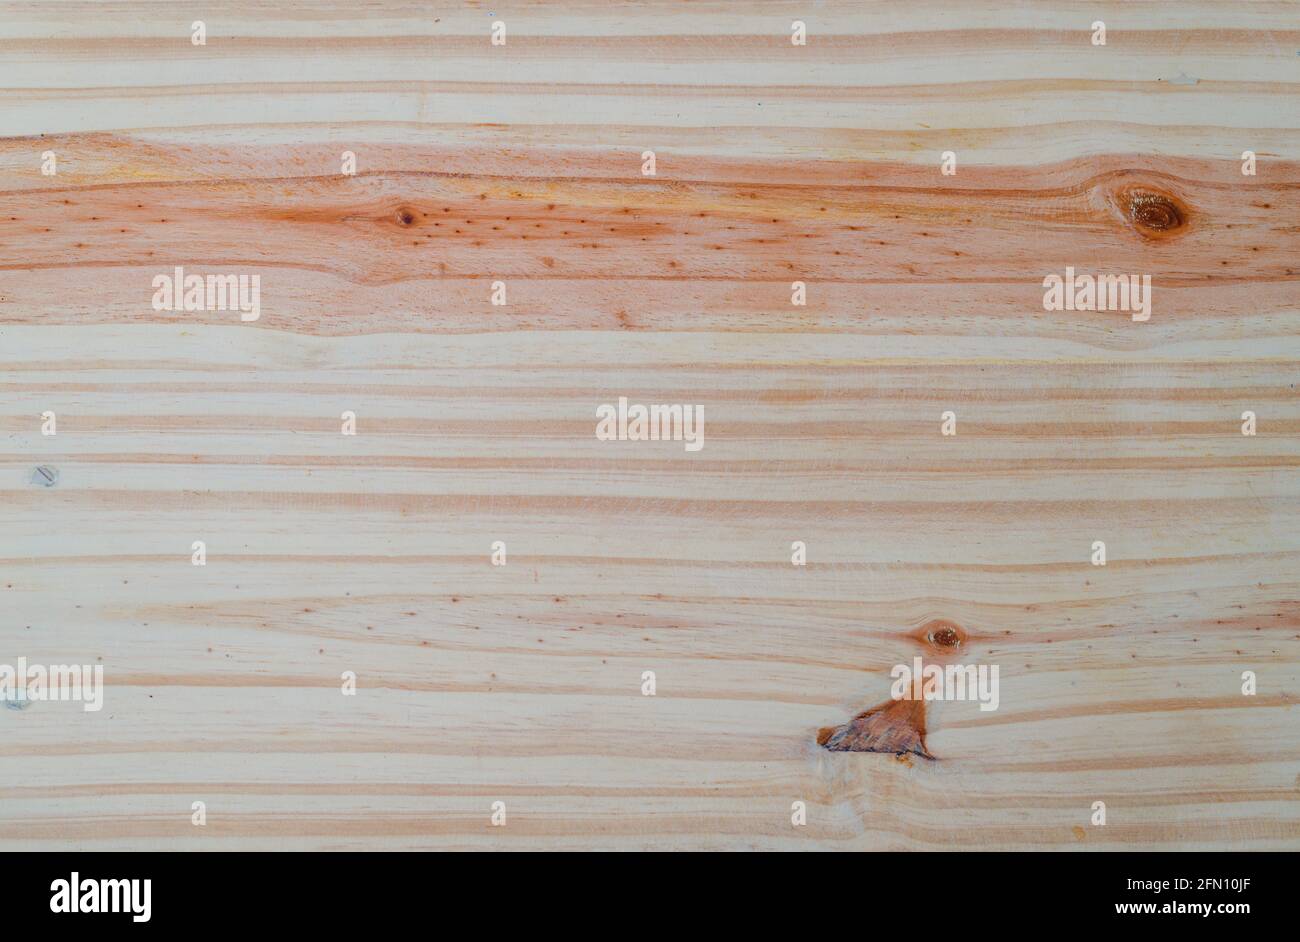 Struttura in legno naturale per lo sfondo, vista dall'alto della superficie morbida del tagliere in legno. Foto Stock